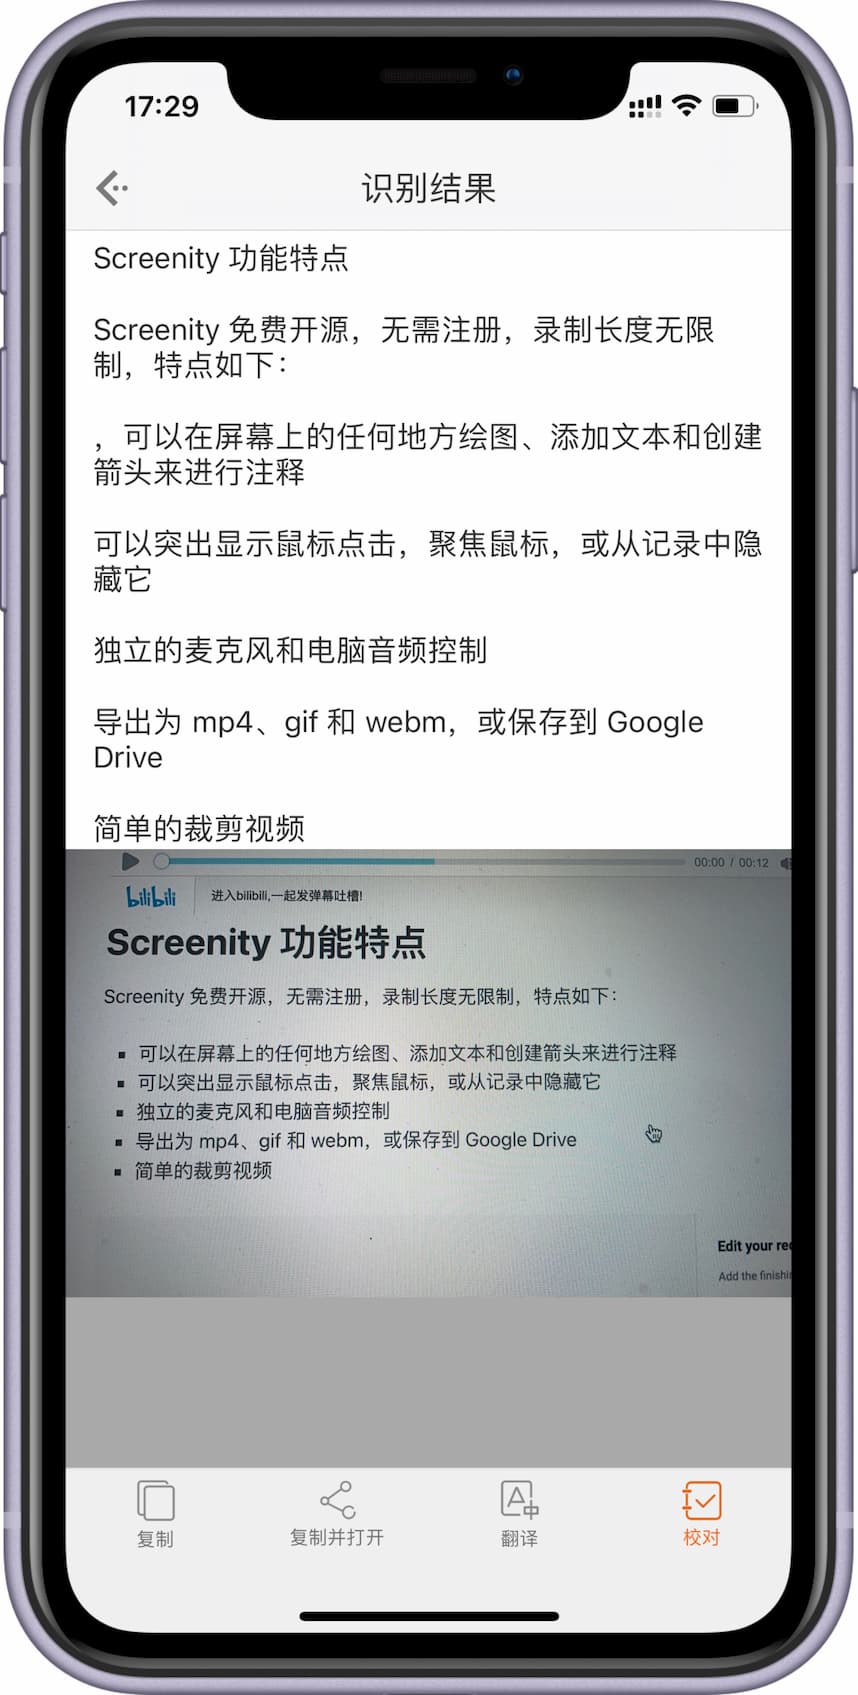 扫描汪 - 完全免费、可离线运行的 OCR 文字识别应用，白描开发者作品[iPhone/iPad] 1